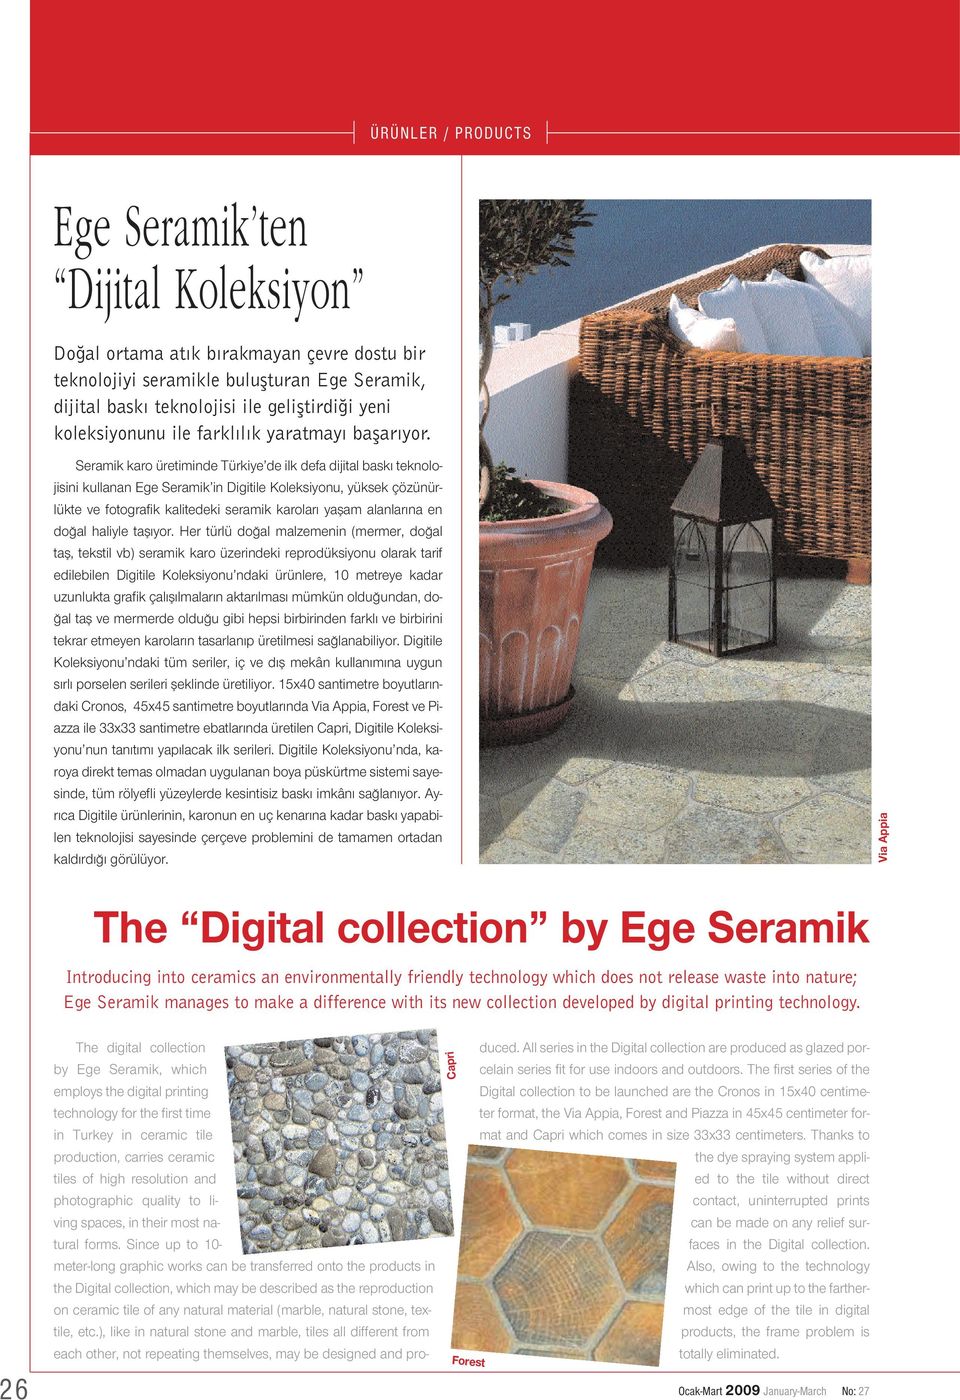 Seramik karo üretiminde Türkiye de ilk defa dijital bask teknolojisini kullanan Ege Seramik in Digitile Koleksiyonu, yüksek çözünürlükte ve fotografik kalitedeki seramik karolar yaflam alanlar na en